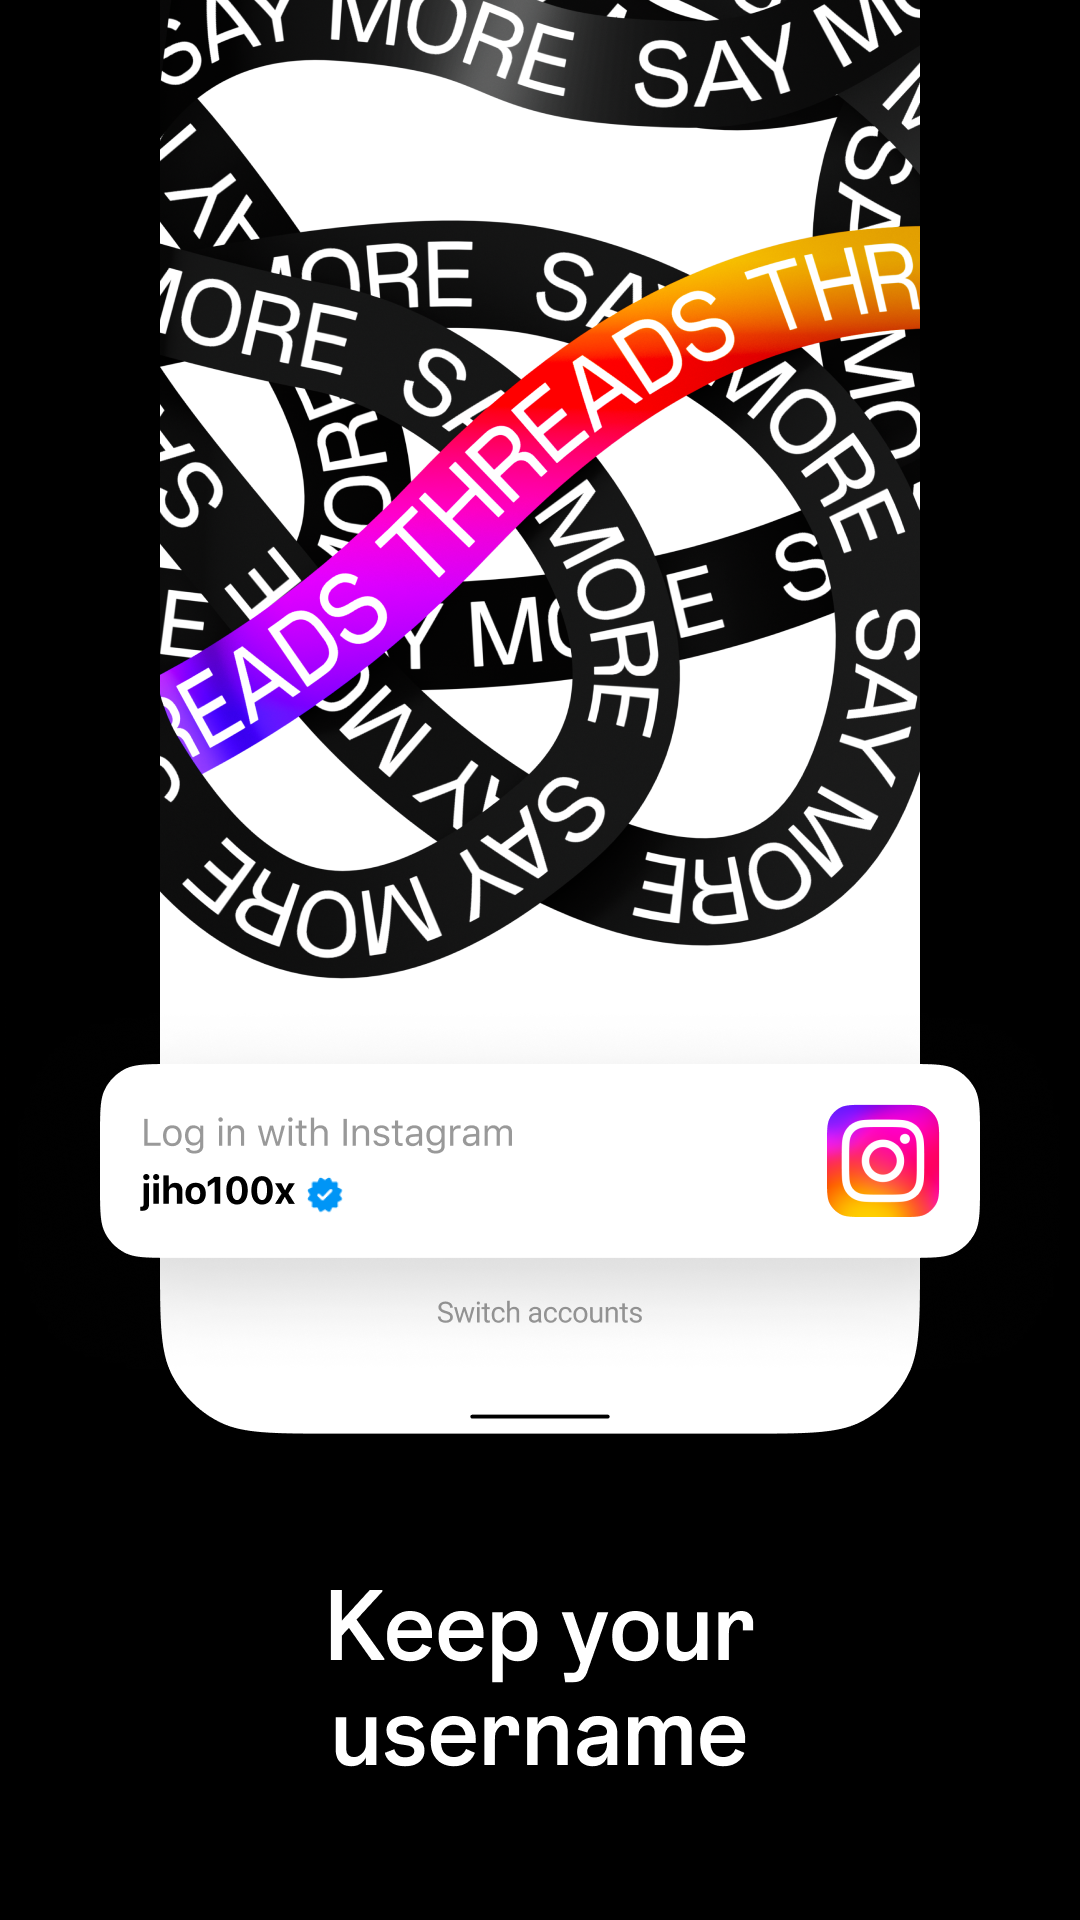 تنزيل تطبيق ثريدز threads Instagram على نظام الاندرويد